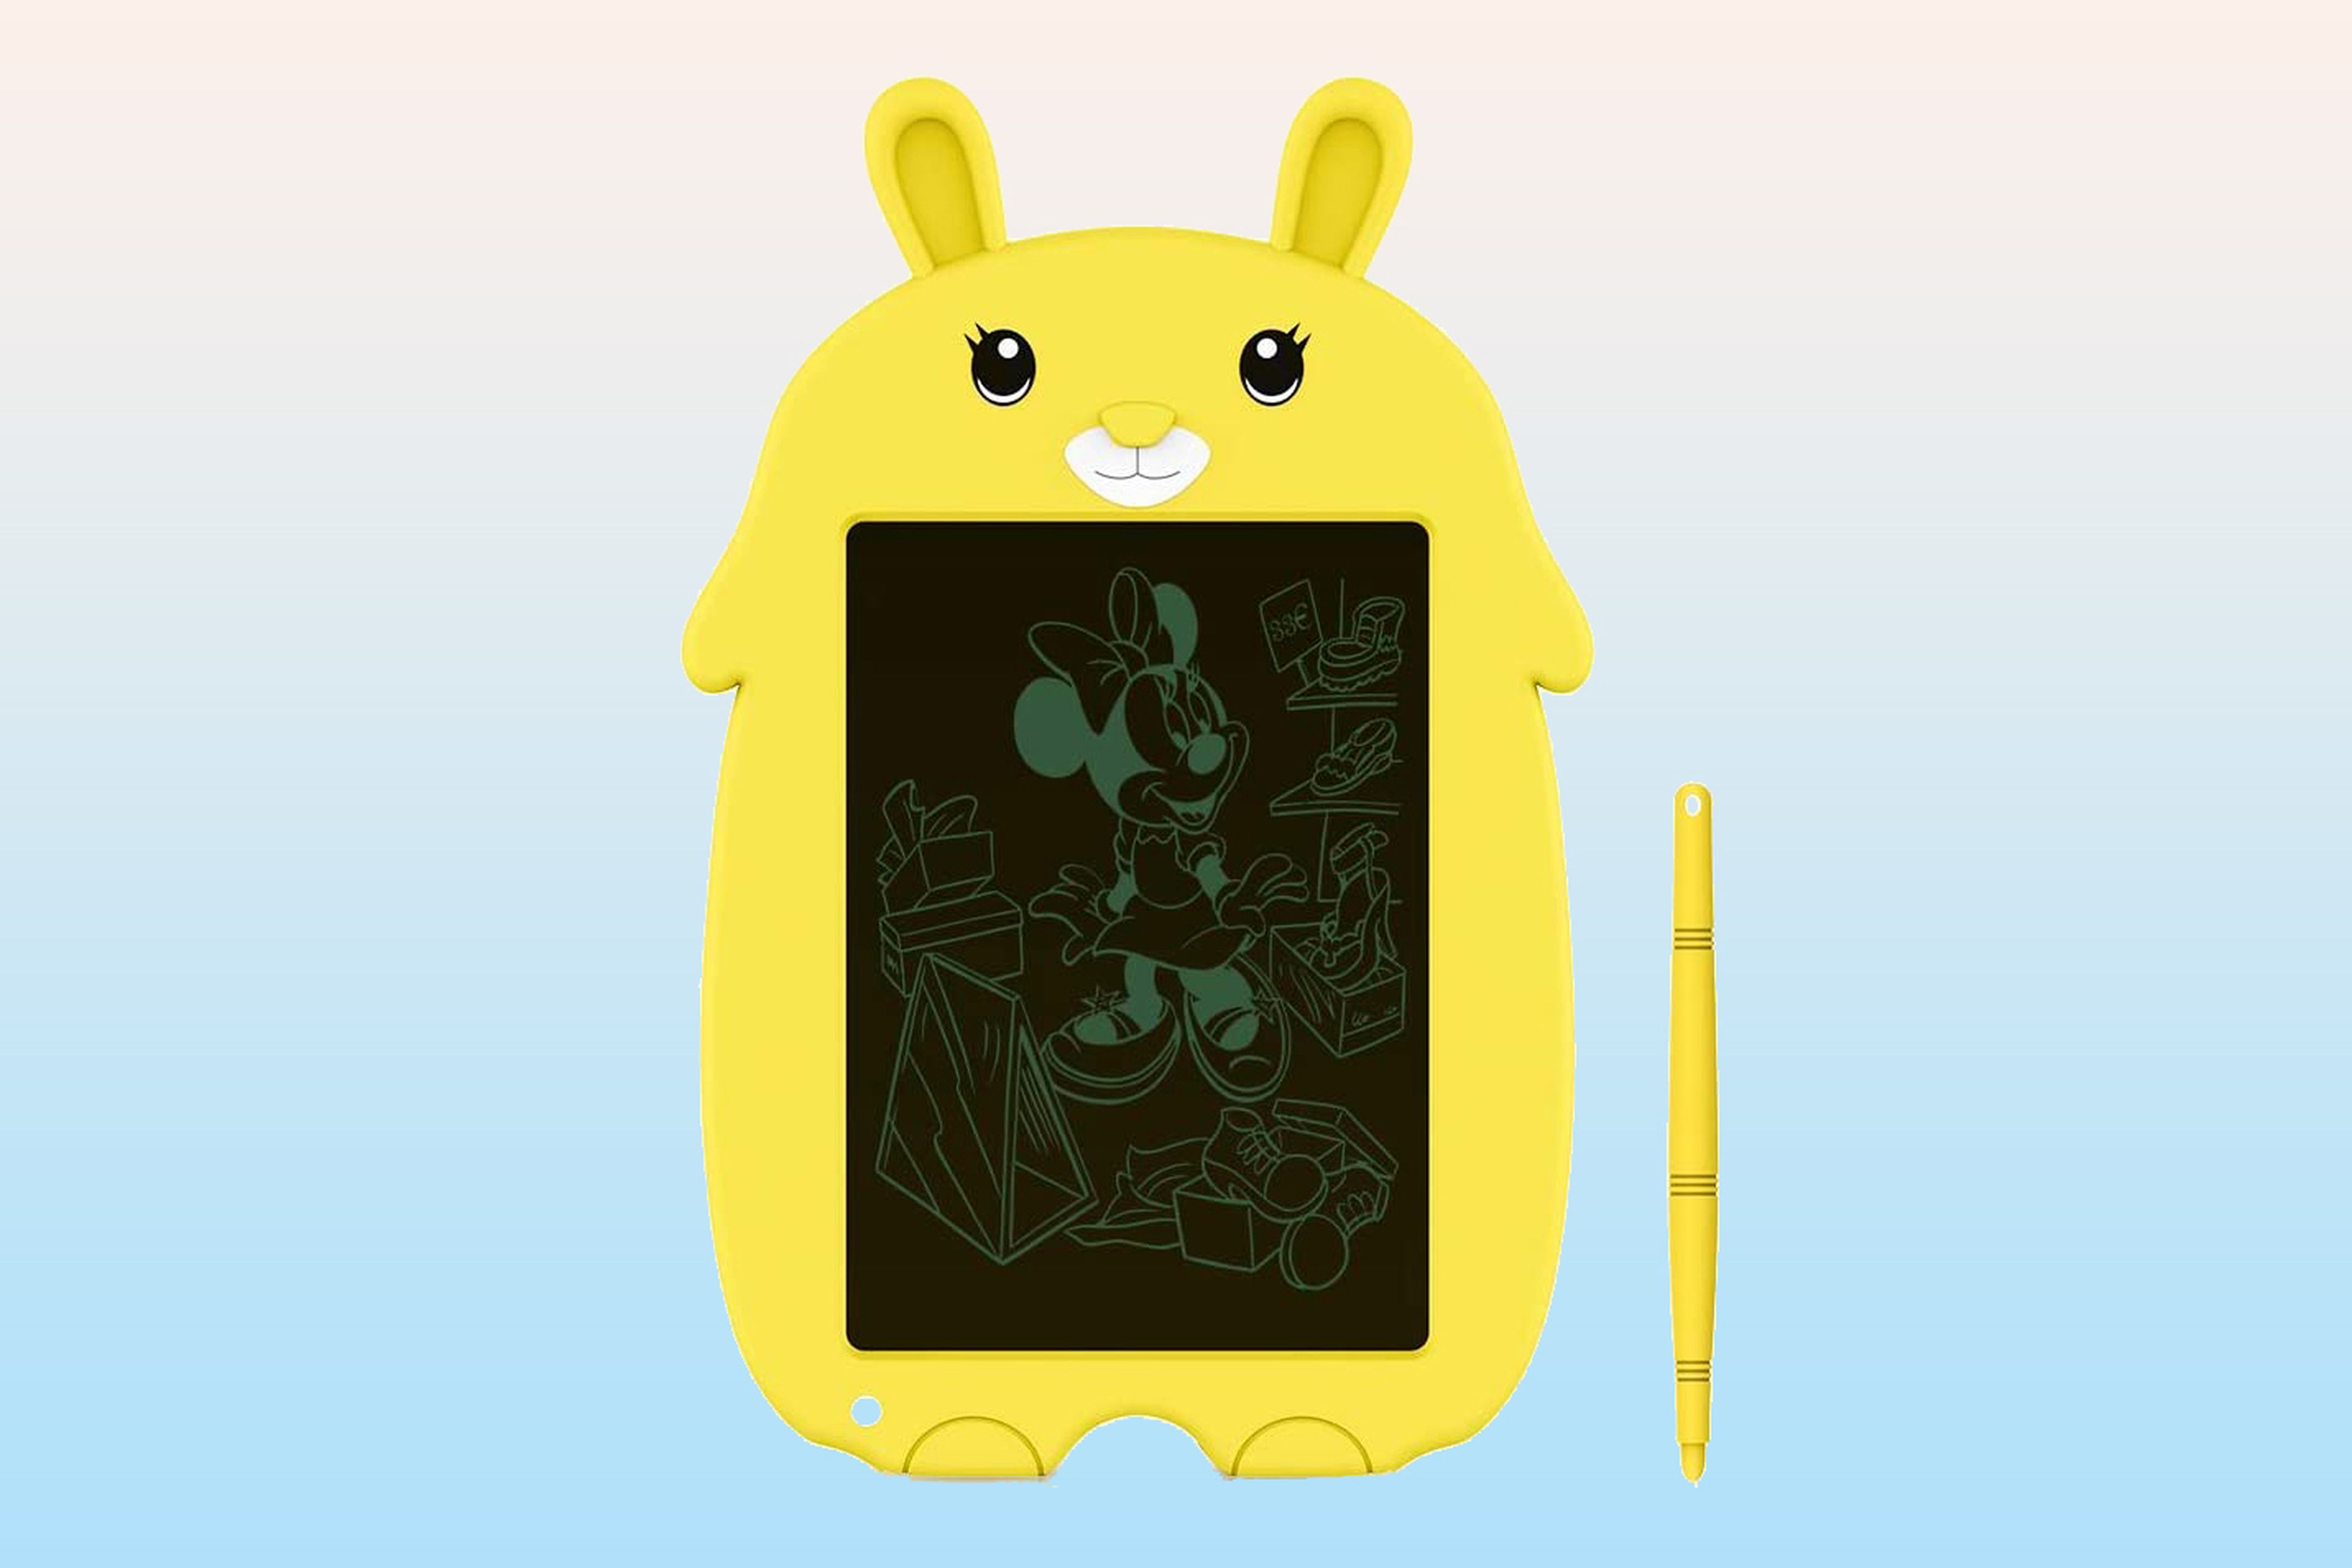 Tabletas LCD para dibujar o escribir para niños